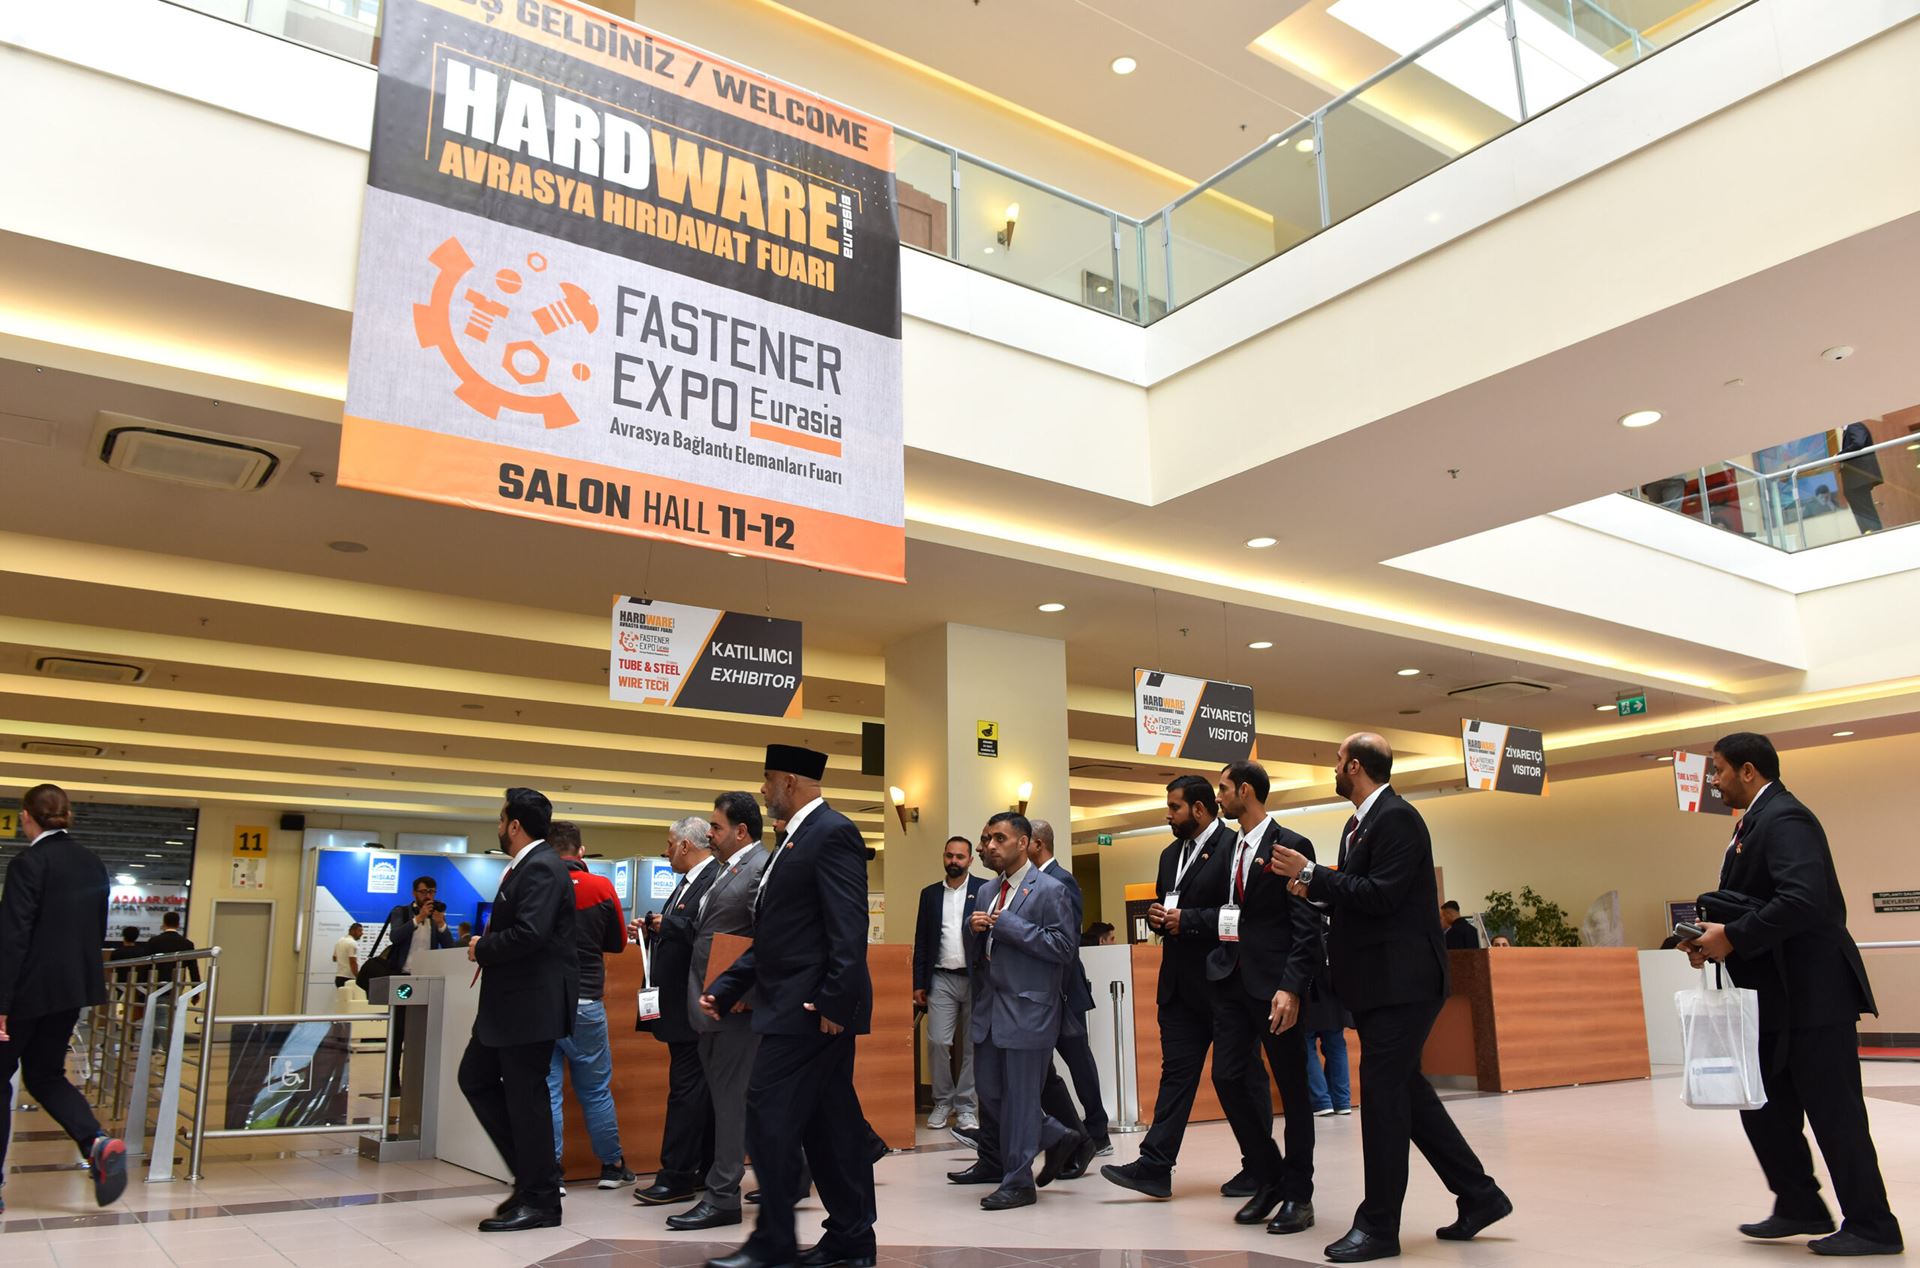 Hardware Eurasia ve Fastener Expo Eurasia Fuarları 24-27 Mayıs tarihlerinde Tüyap Fuar ve Kongre Merkezi’nde gerçekleşti!